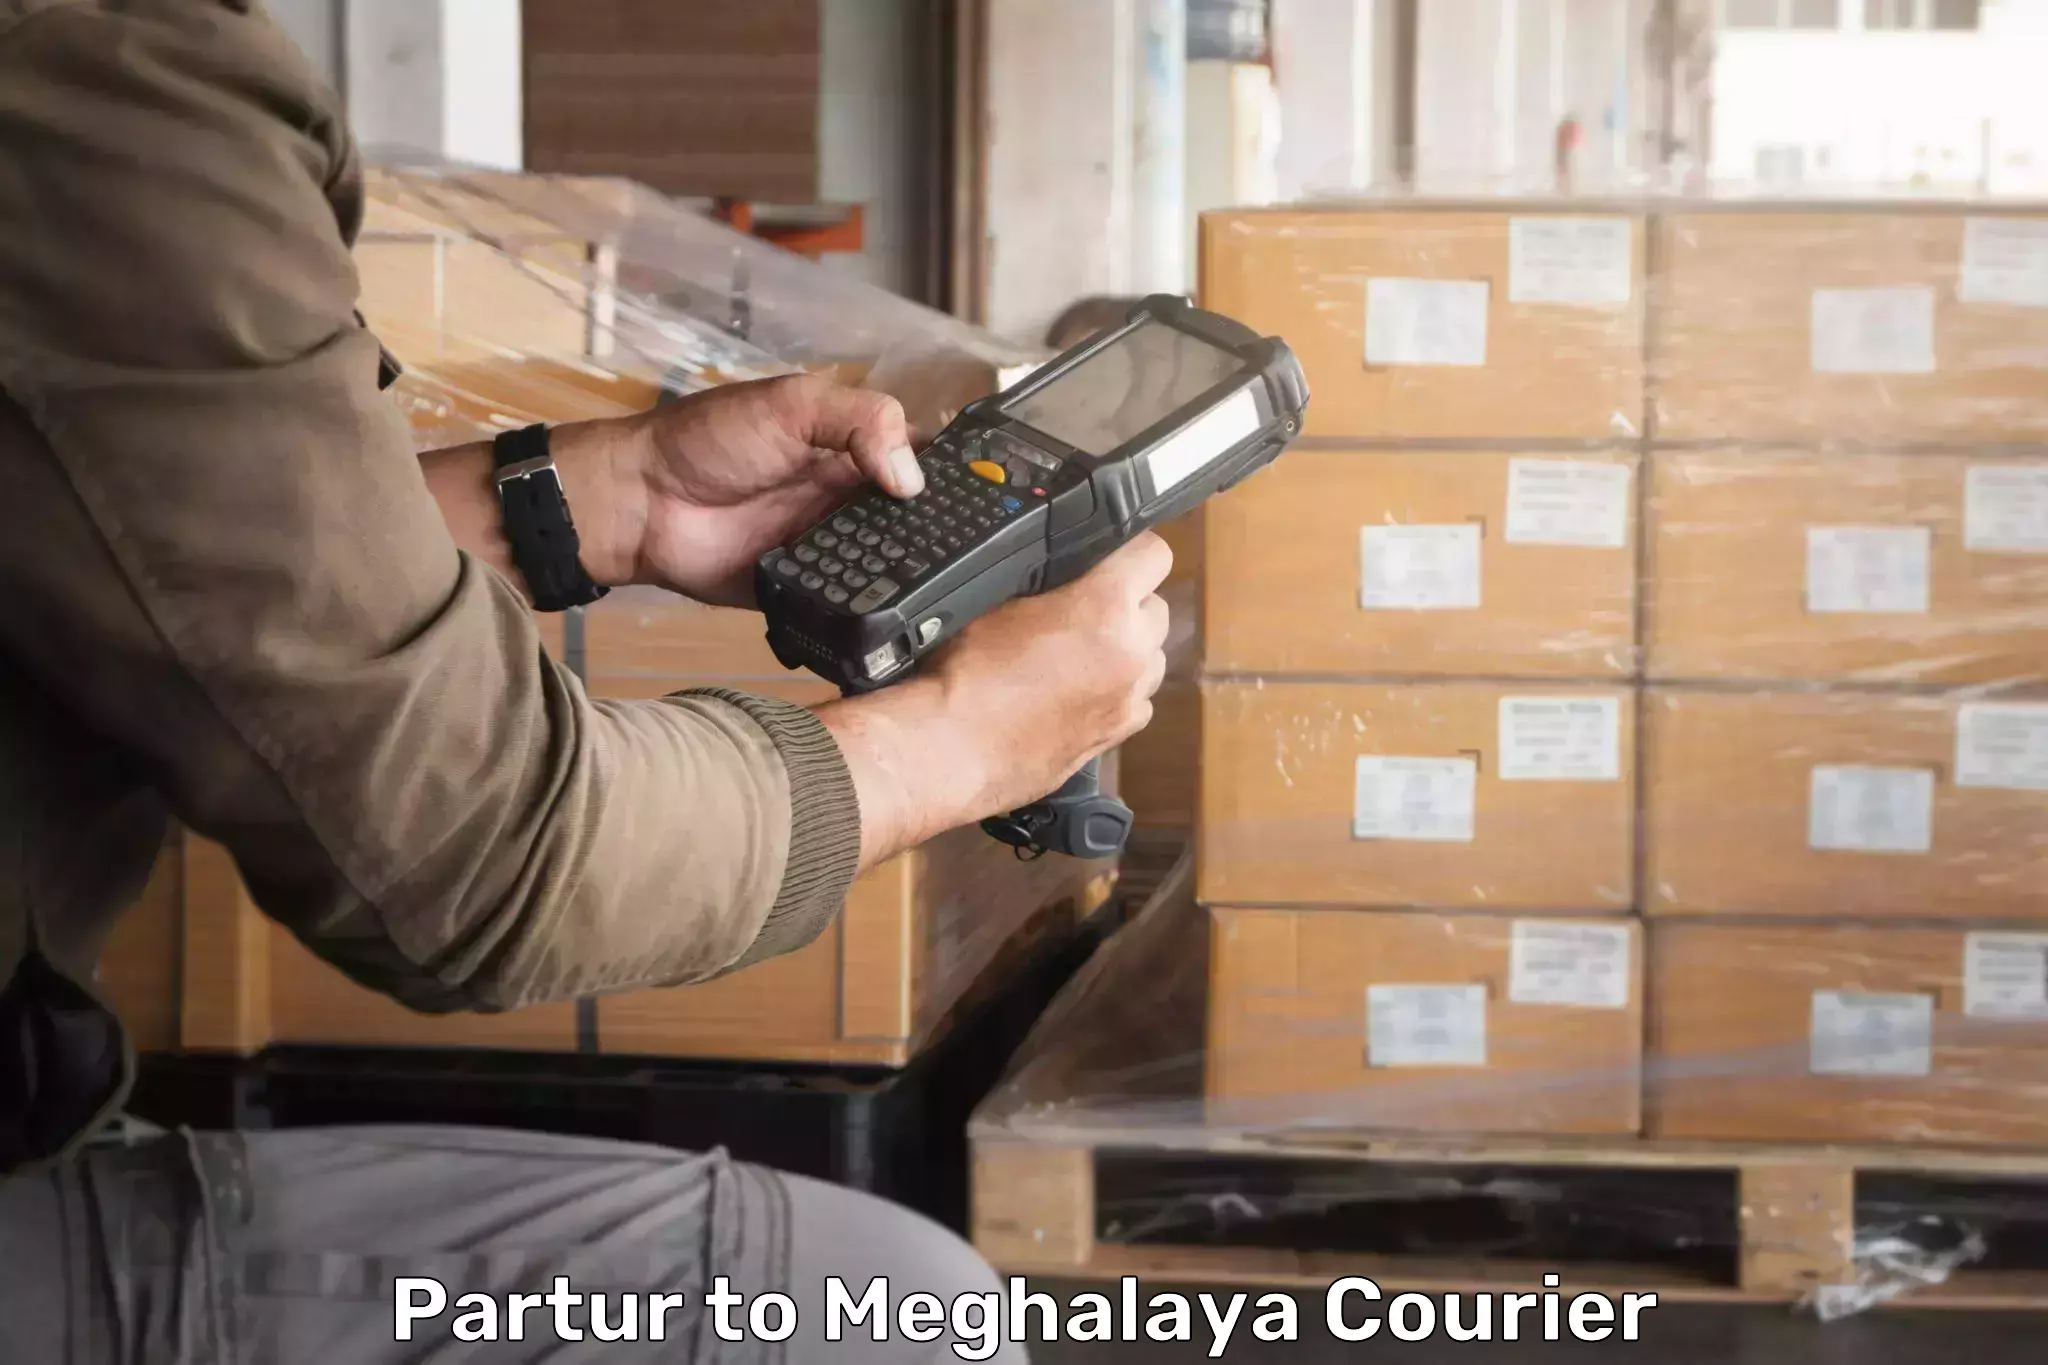 Door-to-door freight service Partur to Meghalaya